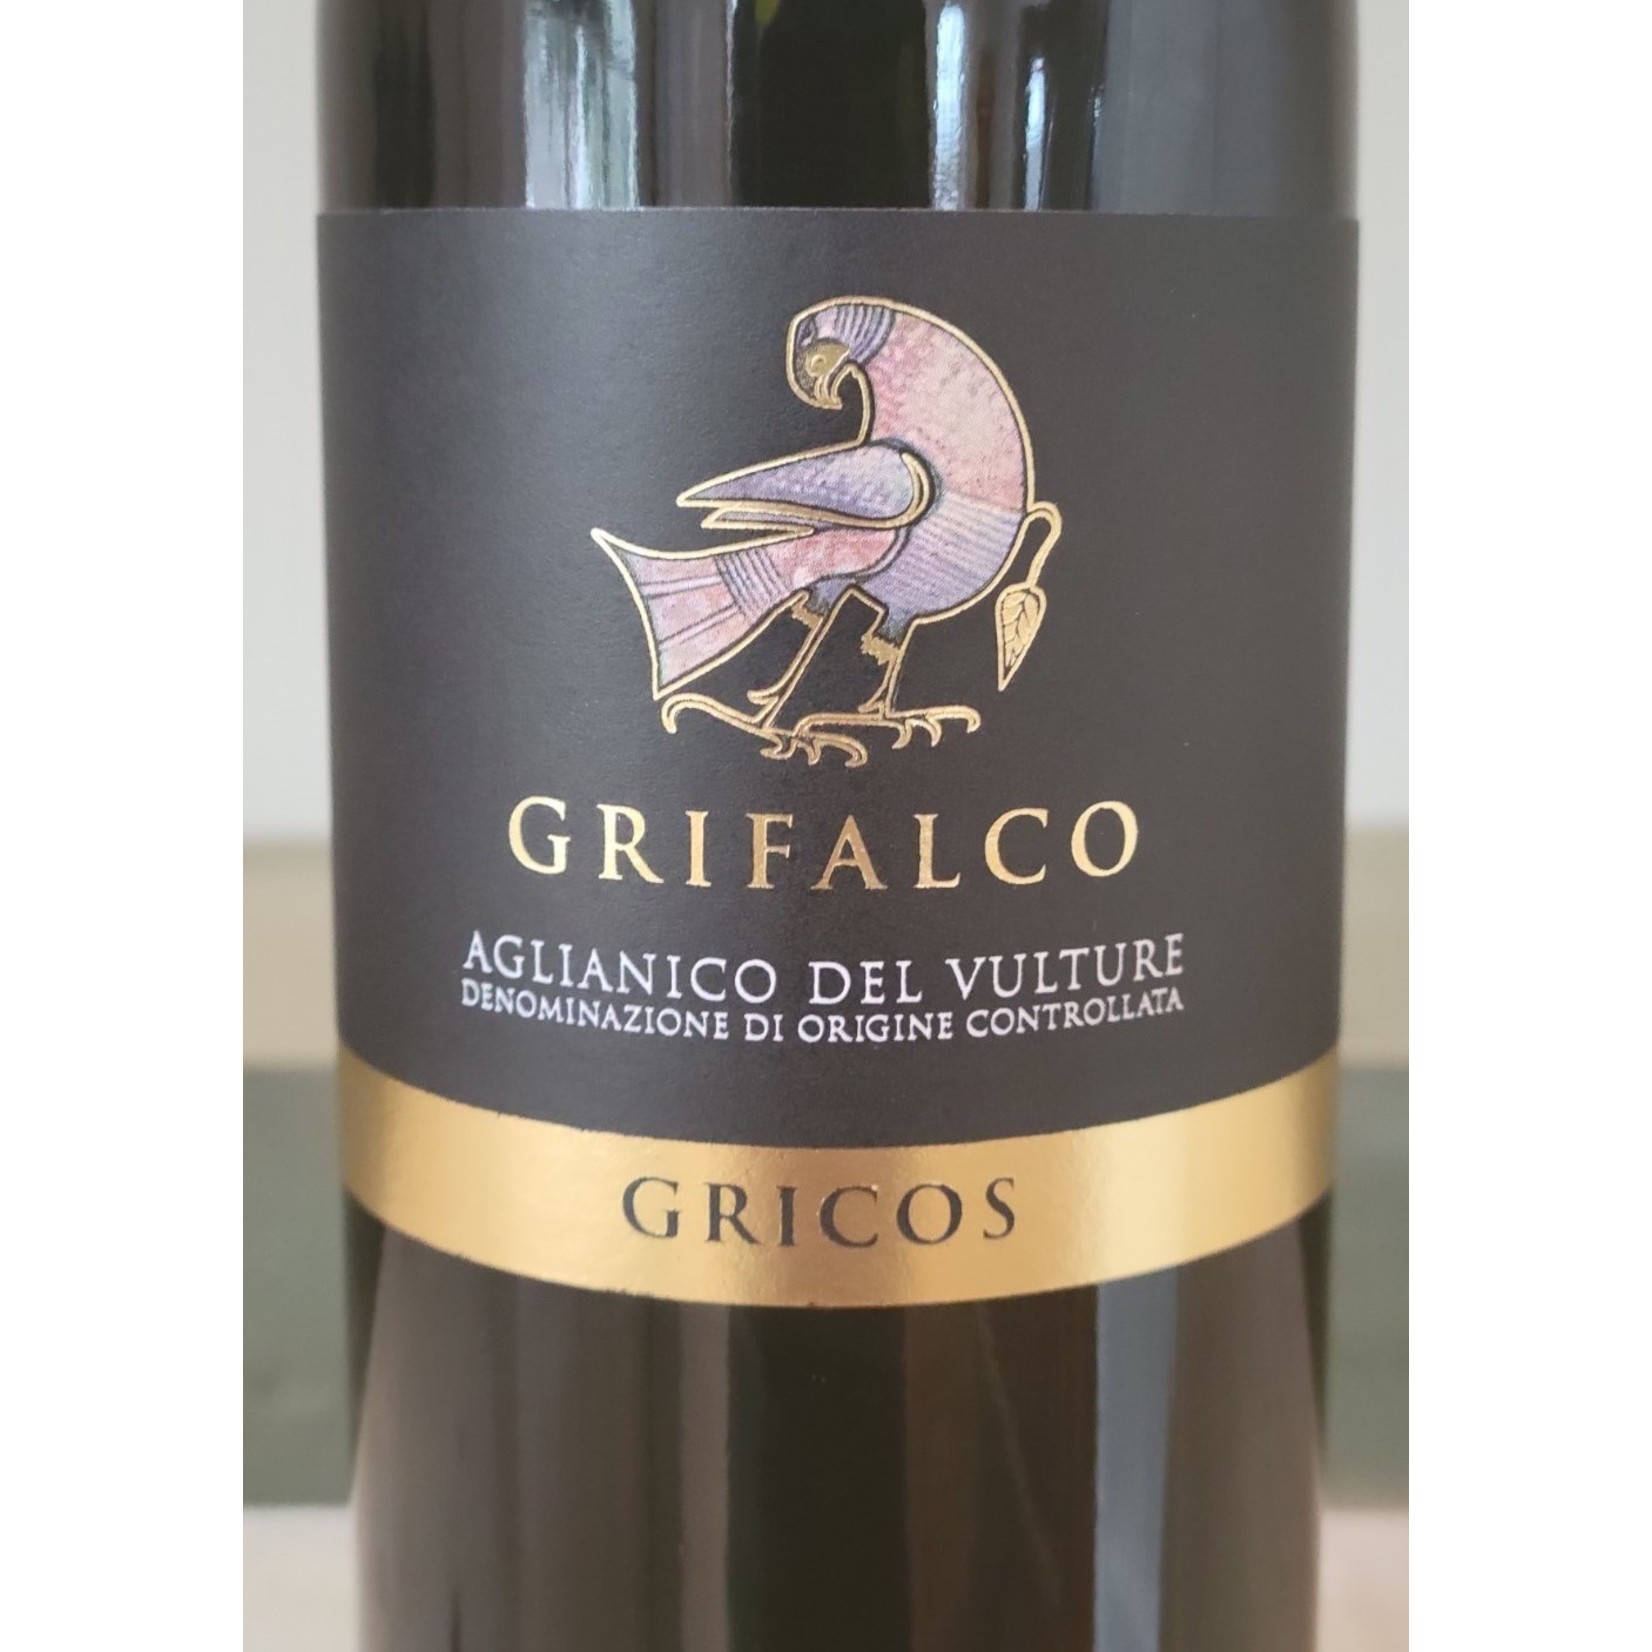 Grifalco "Gricos" Aglianico del Vulture, Basilicata, Italy 2018